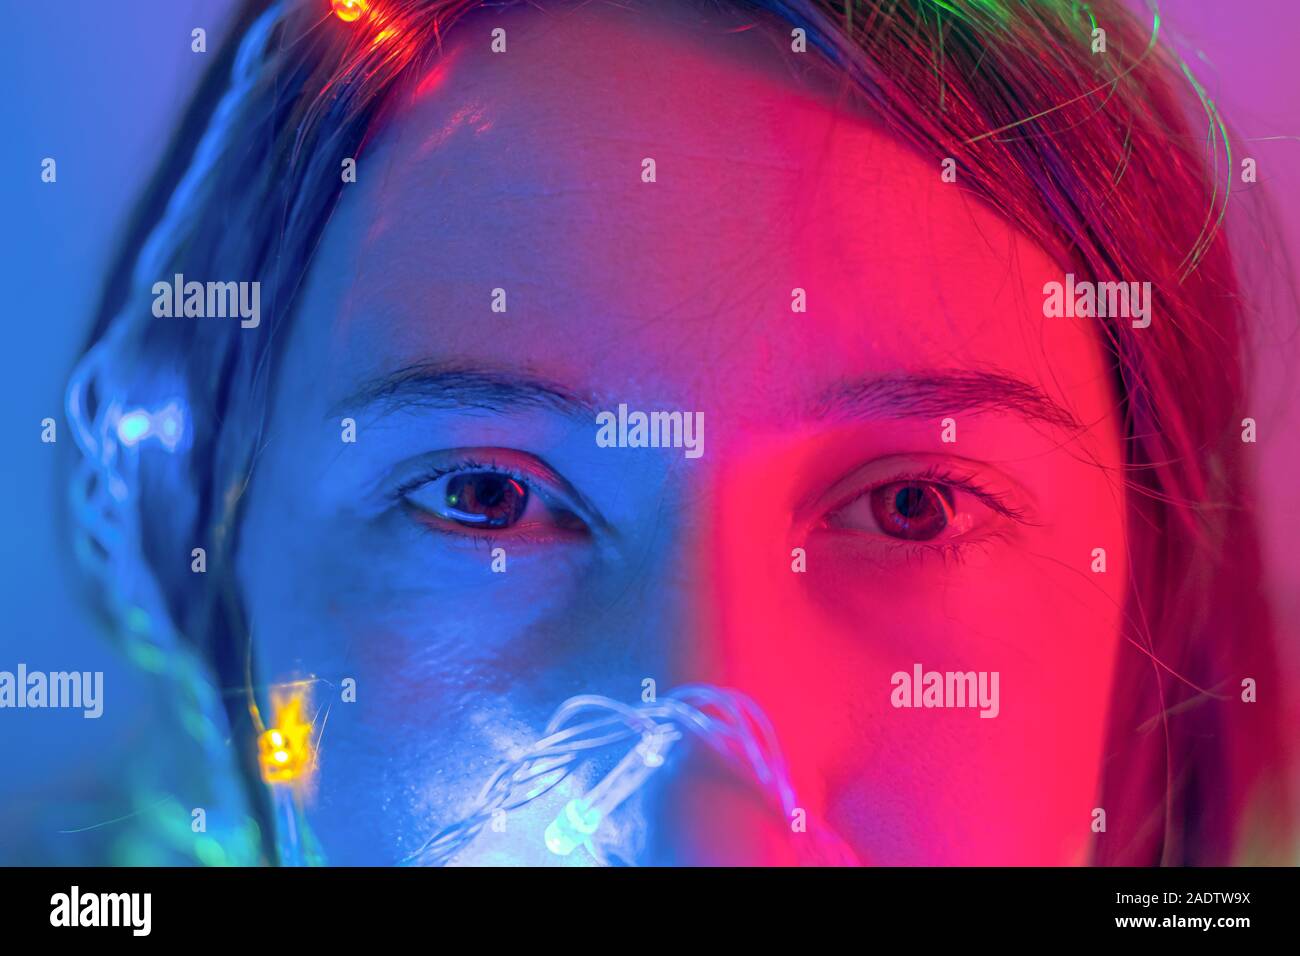 Porträt einer Frau in Neonlichtern. Konzept der Party, Feier, einen Wunsch oder Neujahr Abendgesellschaft Stockfoto